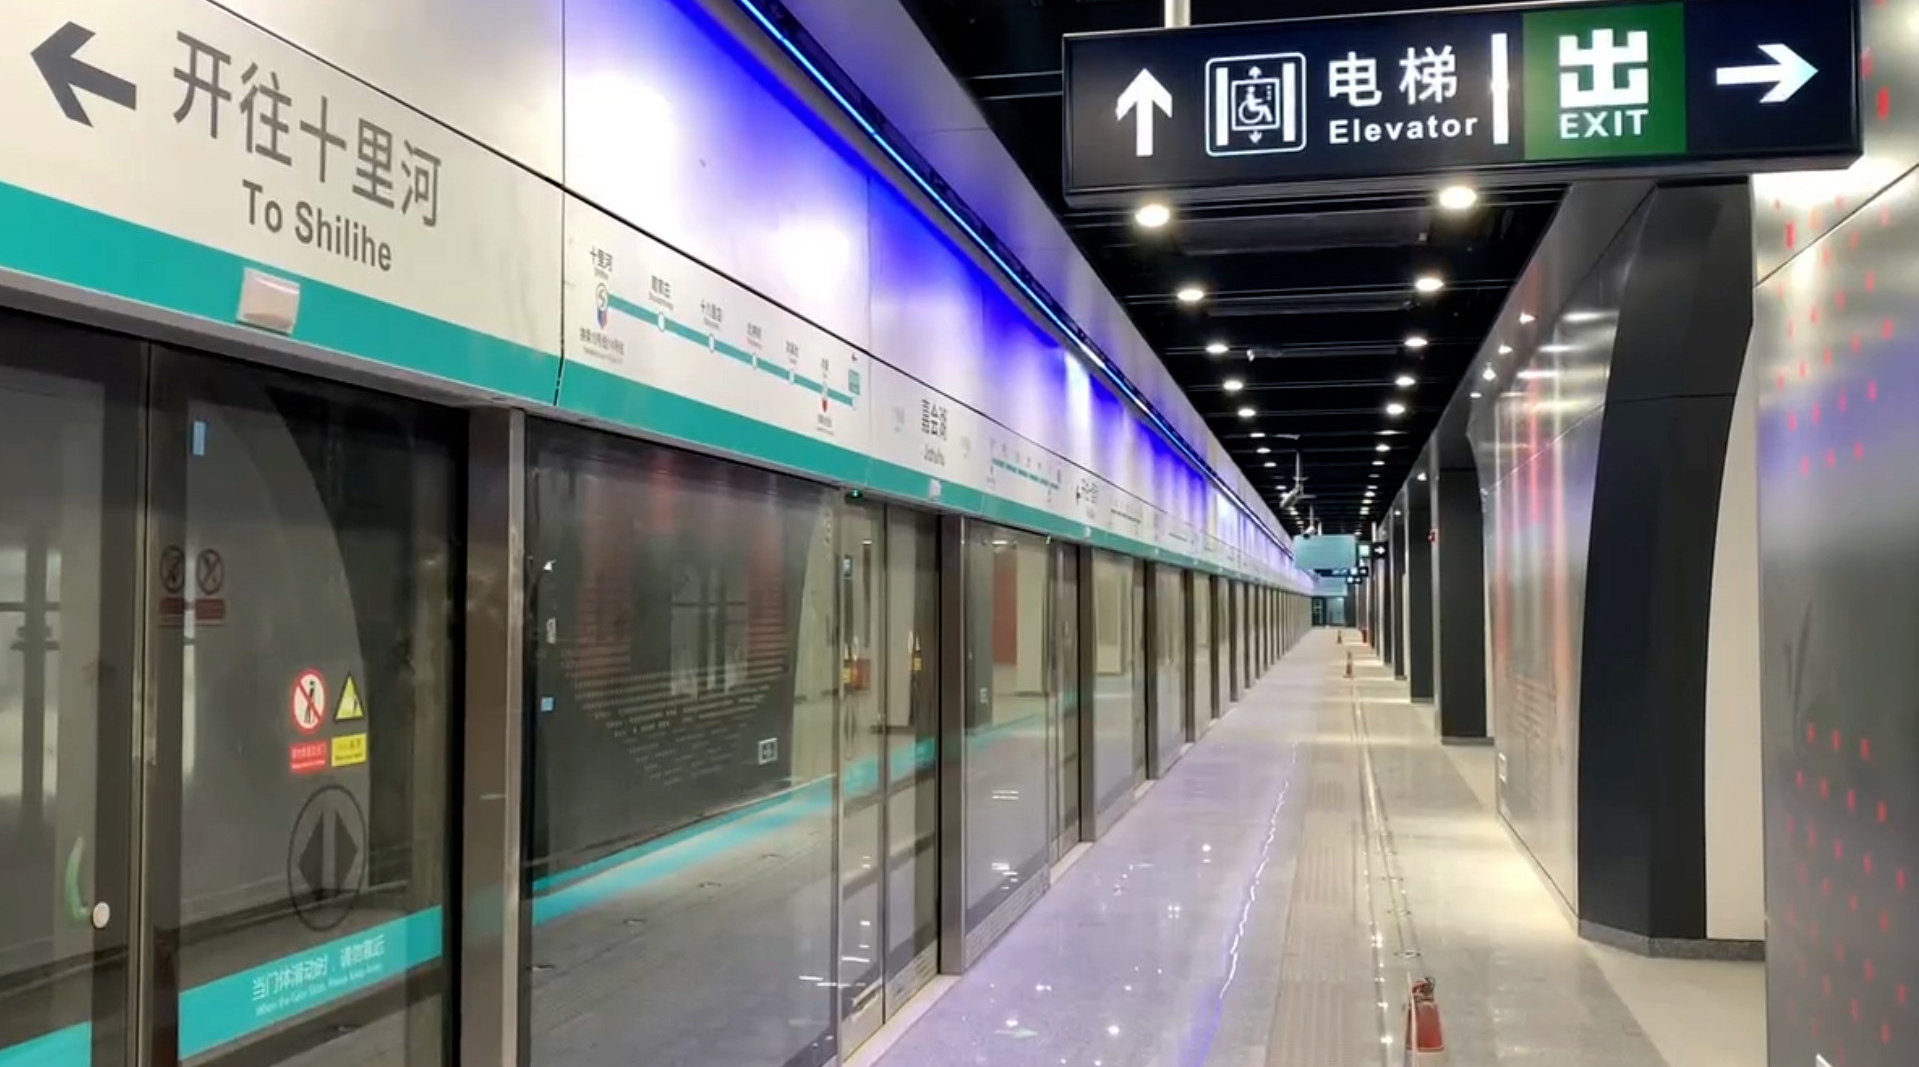 北京地铁线路图2018年最新图片素材-编号30038885-图行天下